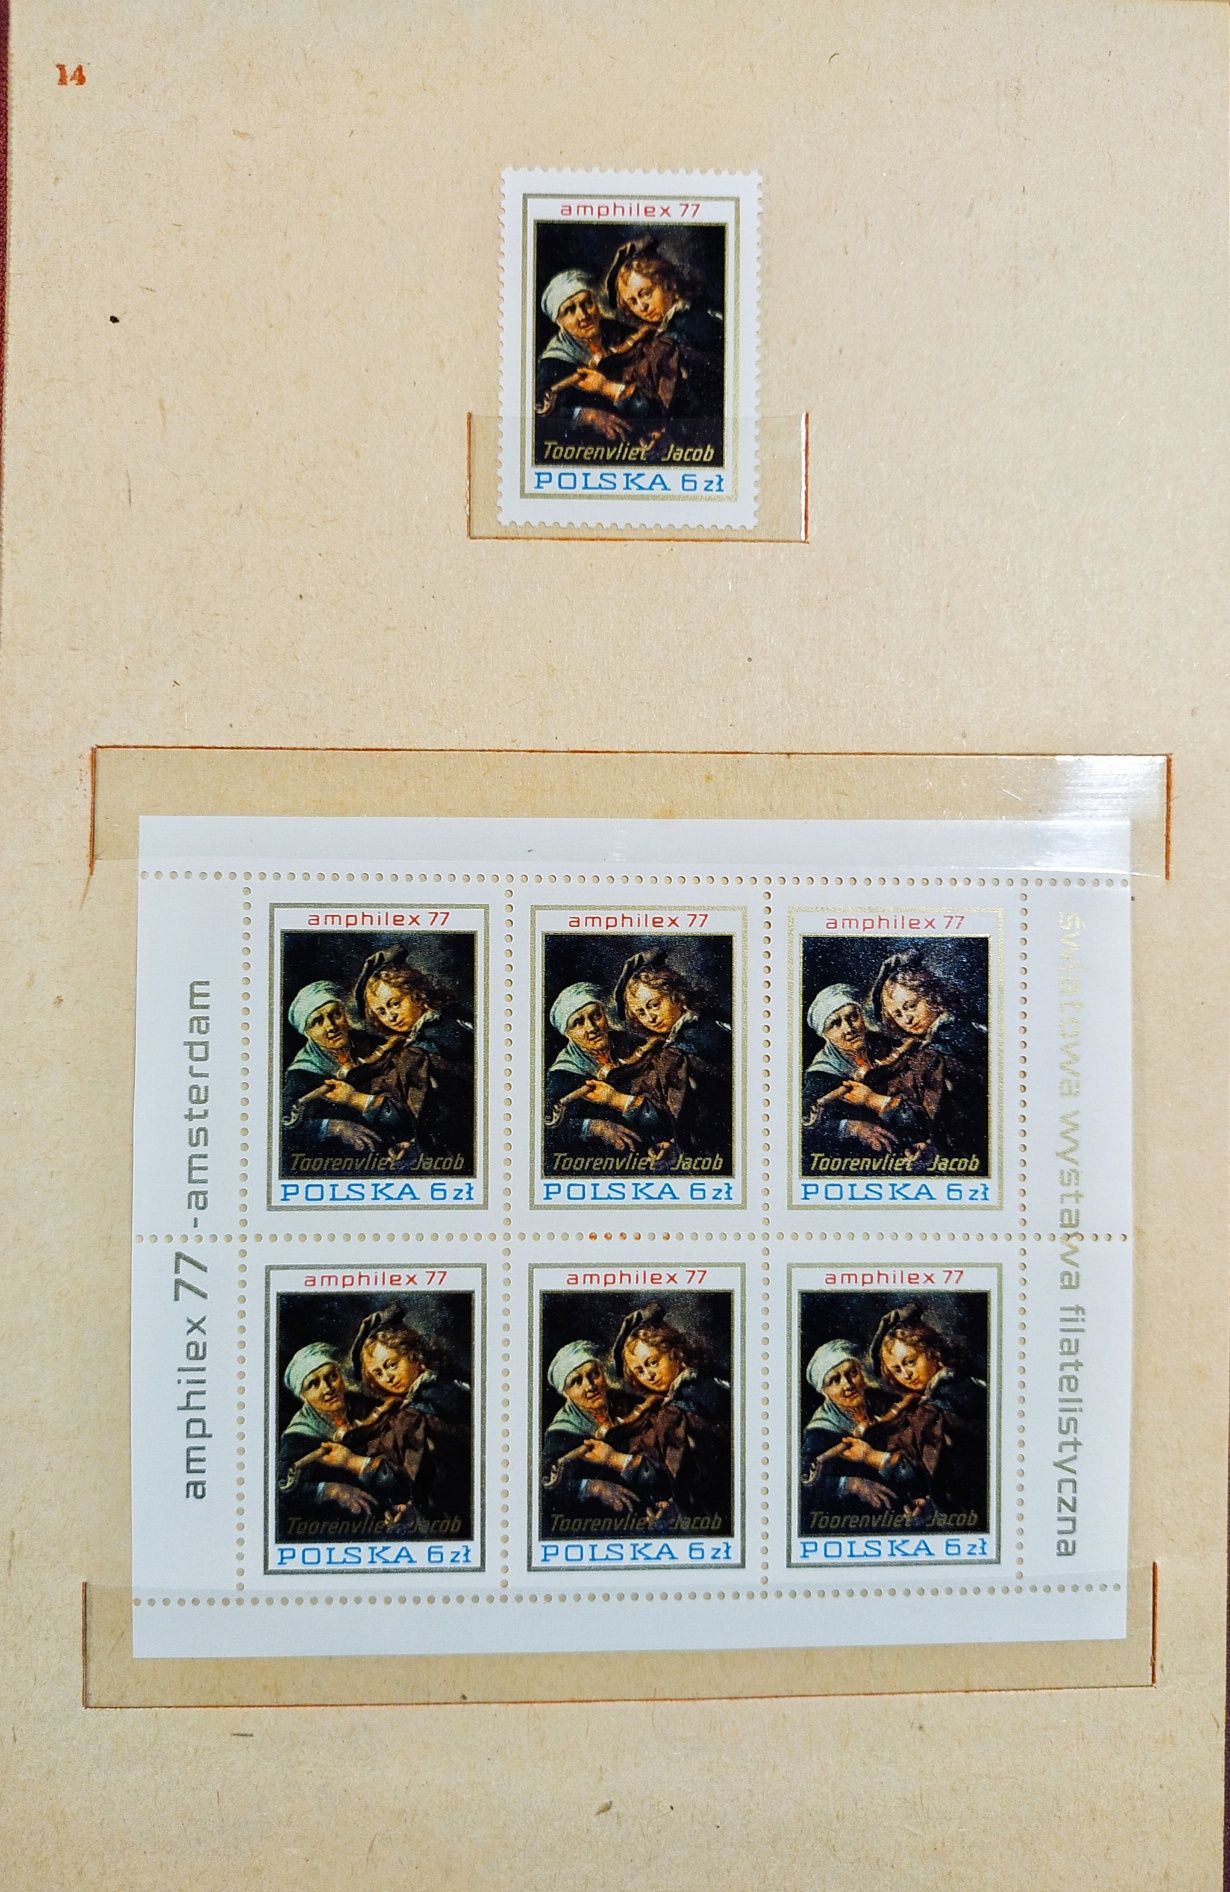 Klaser jubileuszowy Polska 76-77 tom XII znaczki czyste, kompletny